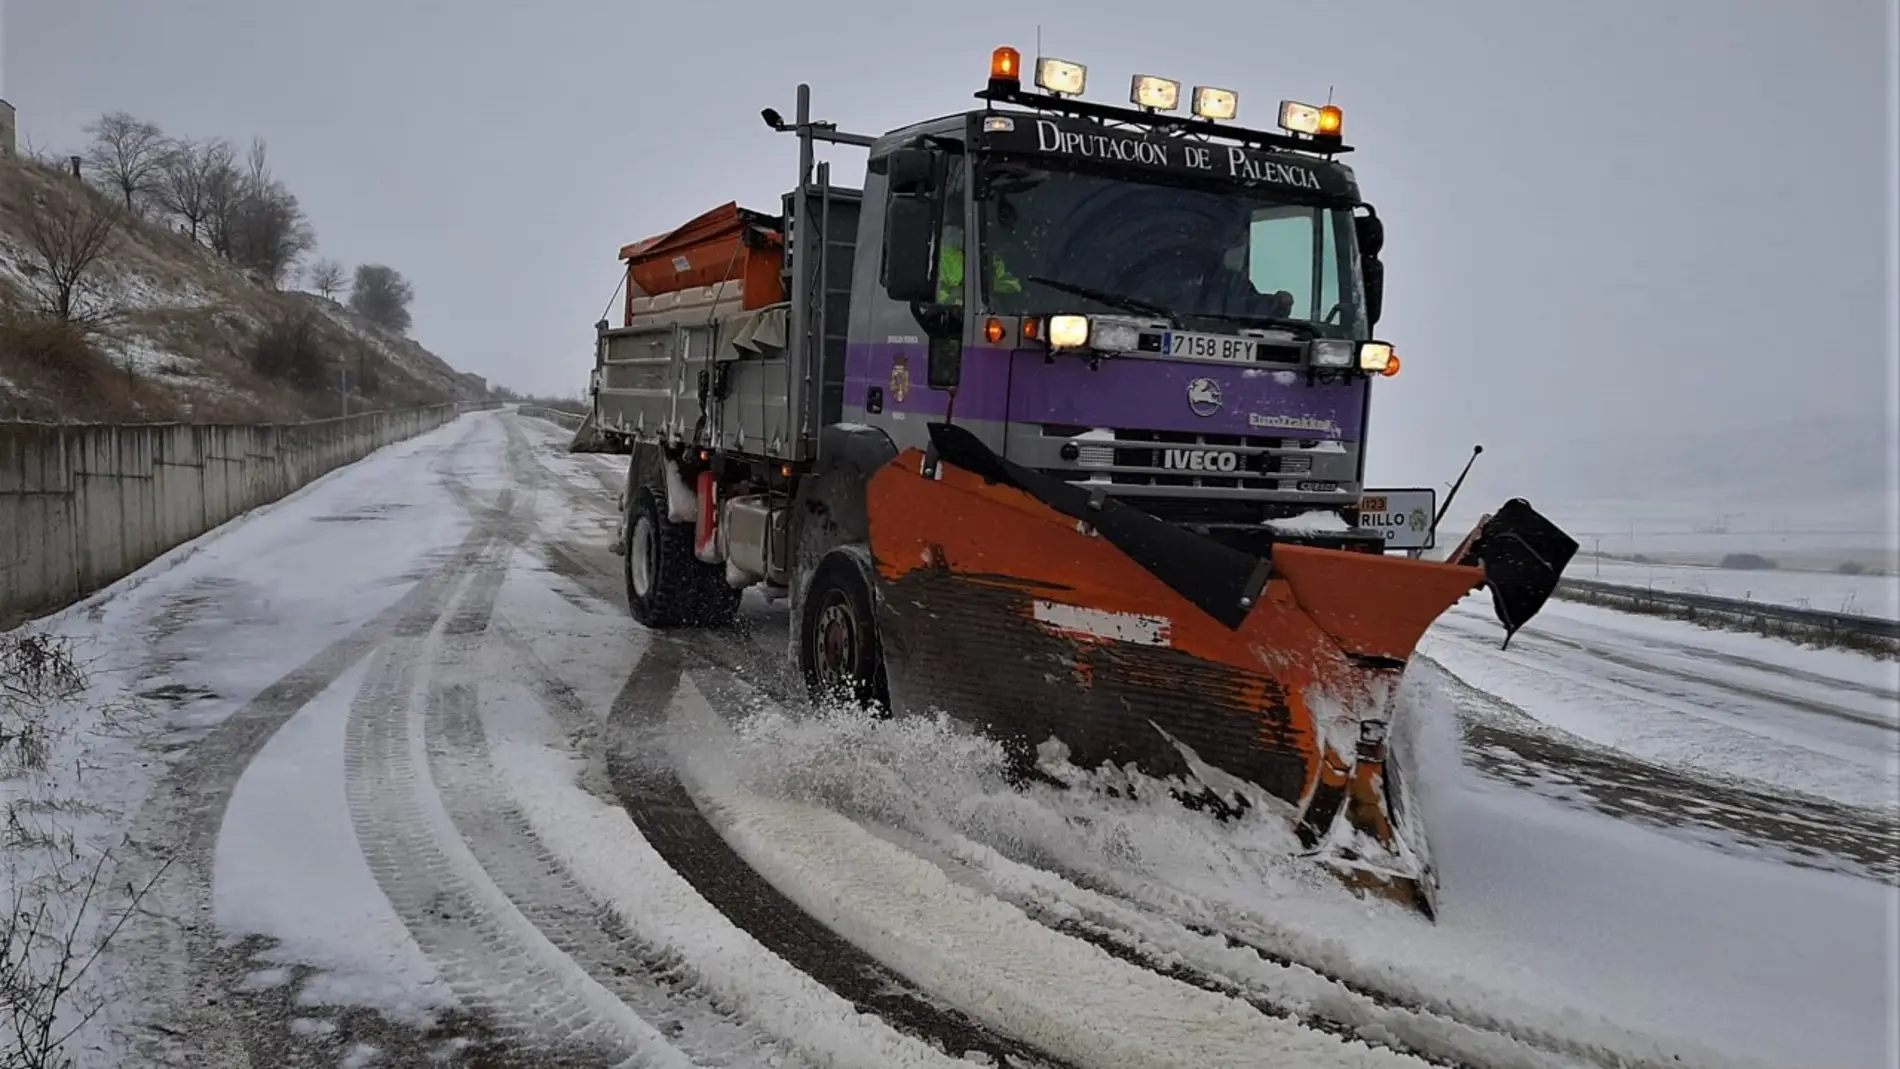 La Diputación empleó once vehículos y más de 350 toneladas de sal en su dispositivo frente al temporal